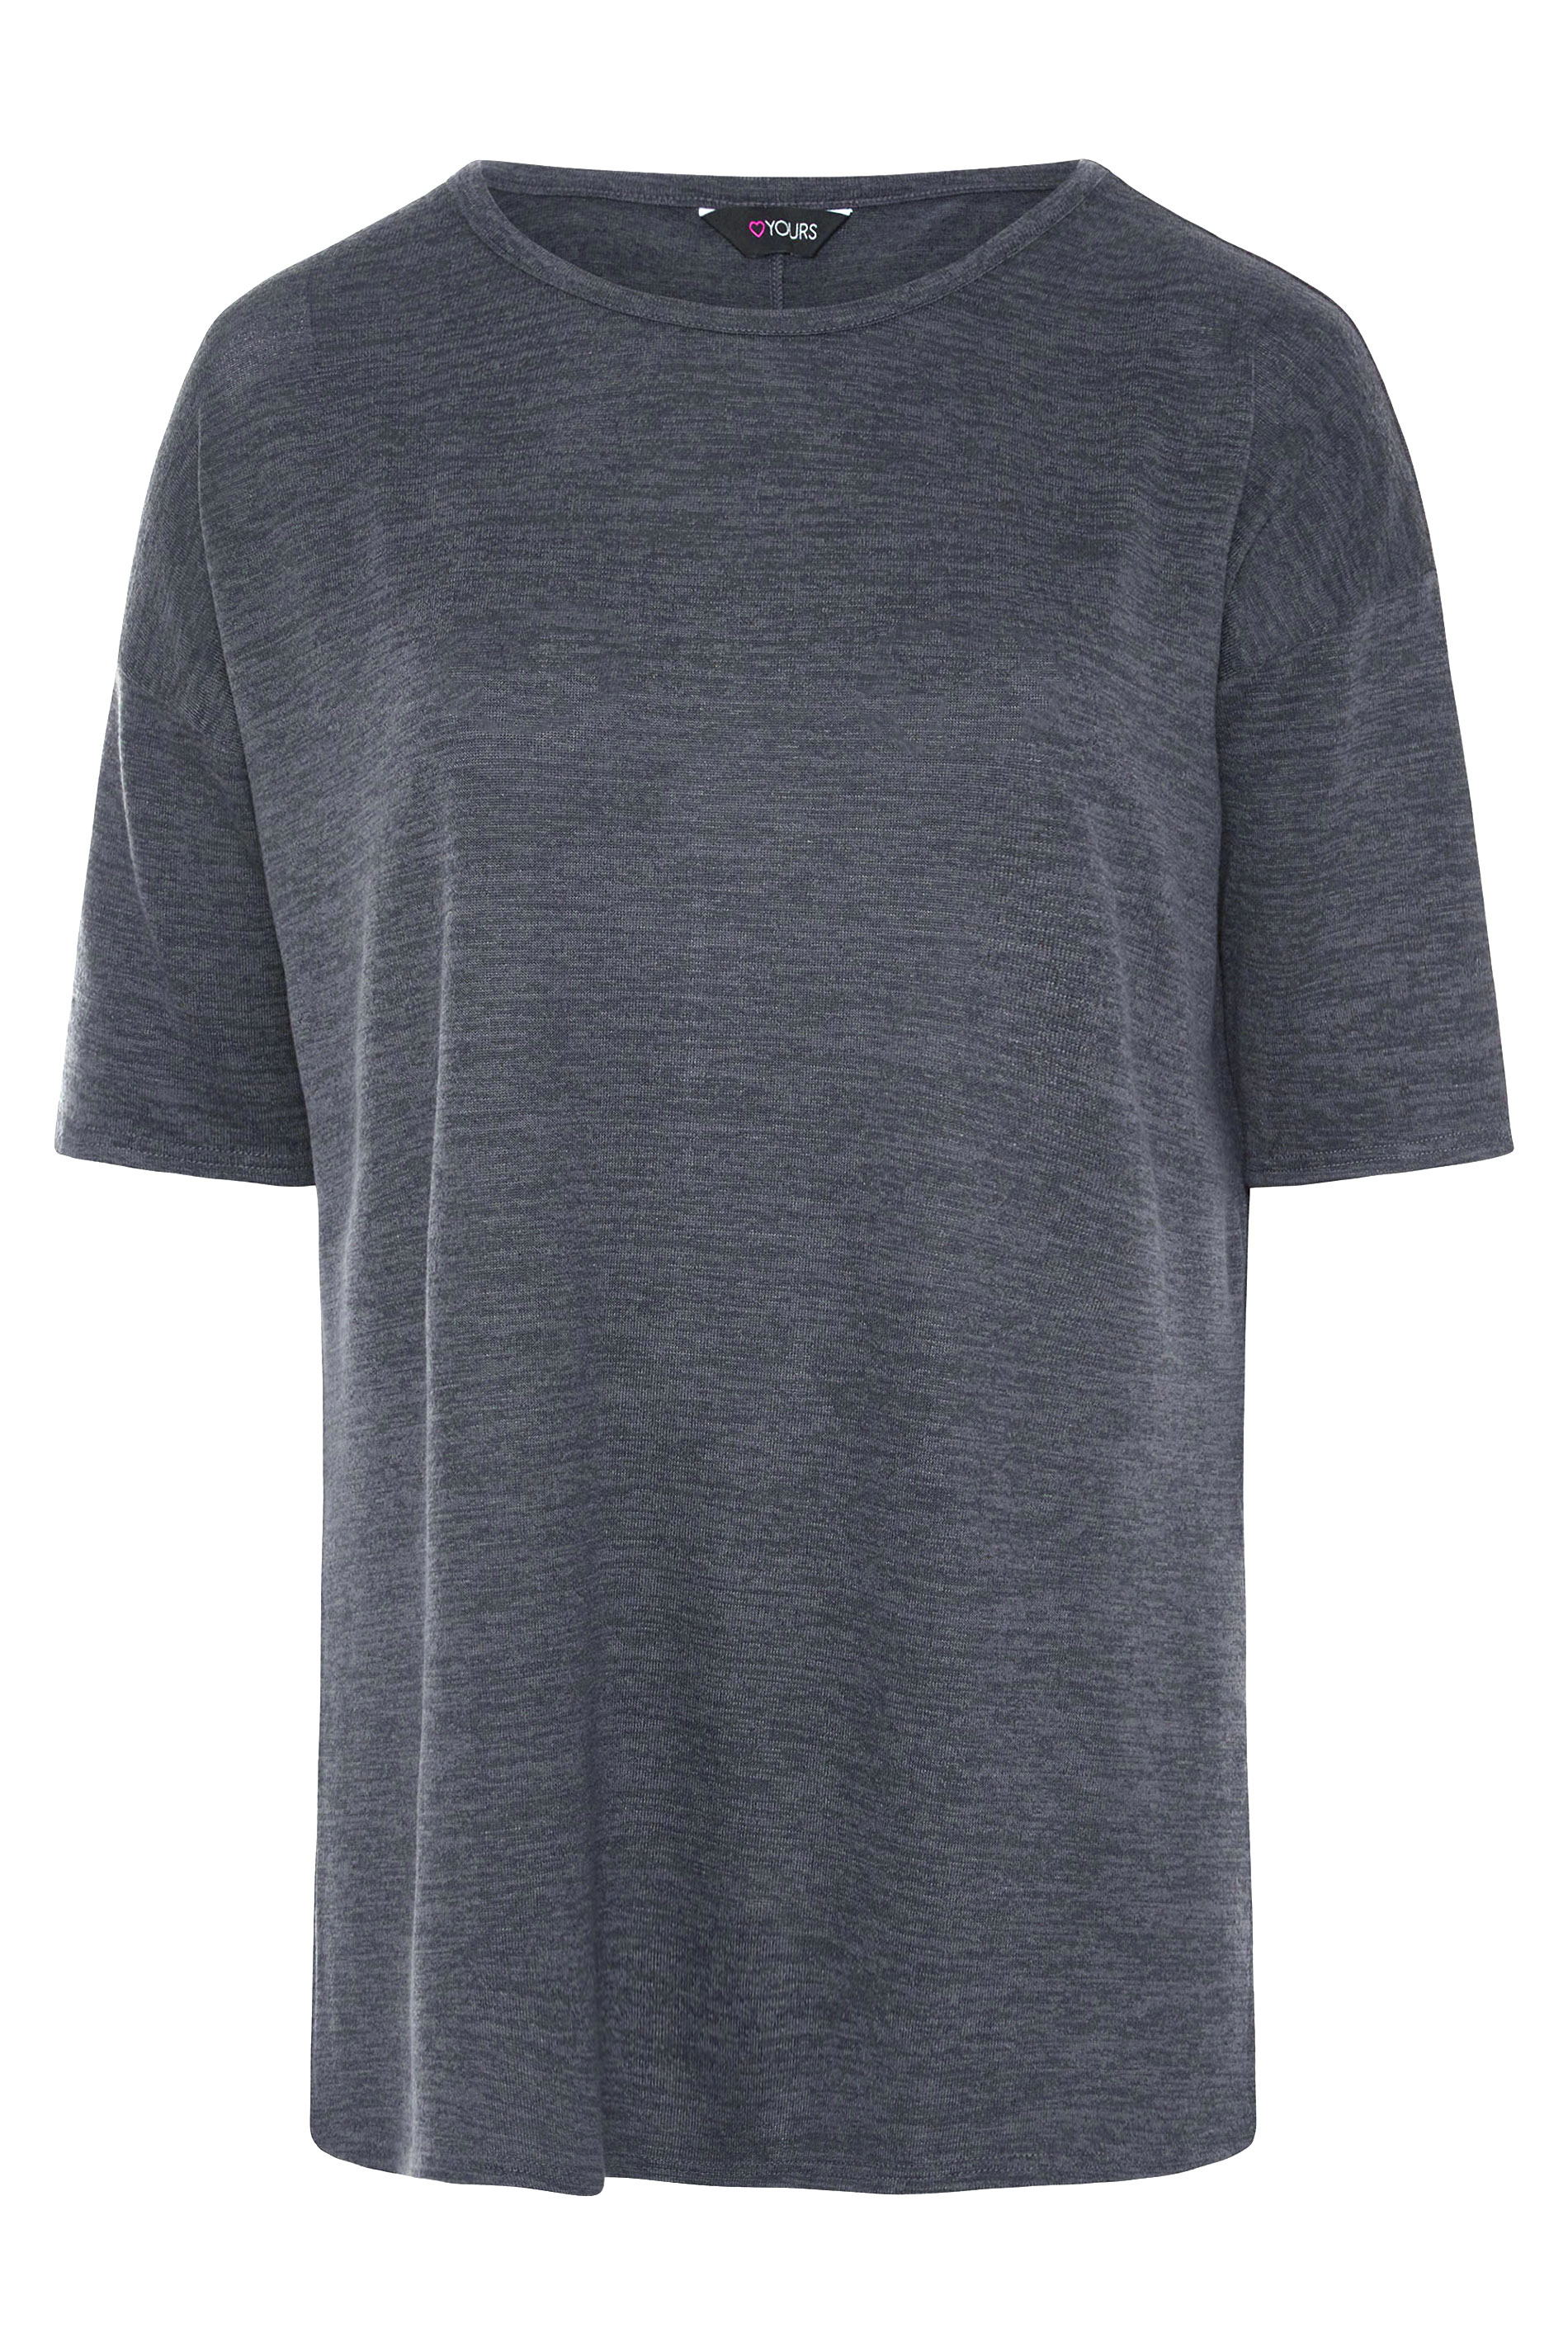 Grande taille  Tops Grande taille  T-Shirts Basiques & Débardeurs | T-Shirt Gris Style Oversize - CI49726